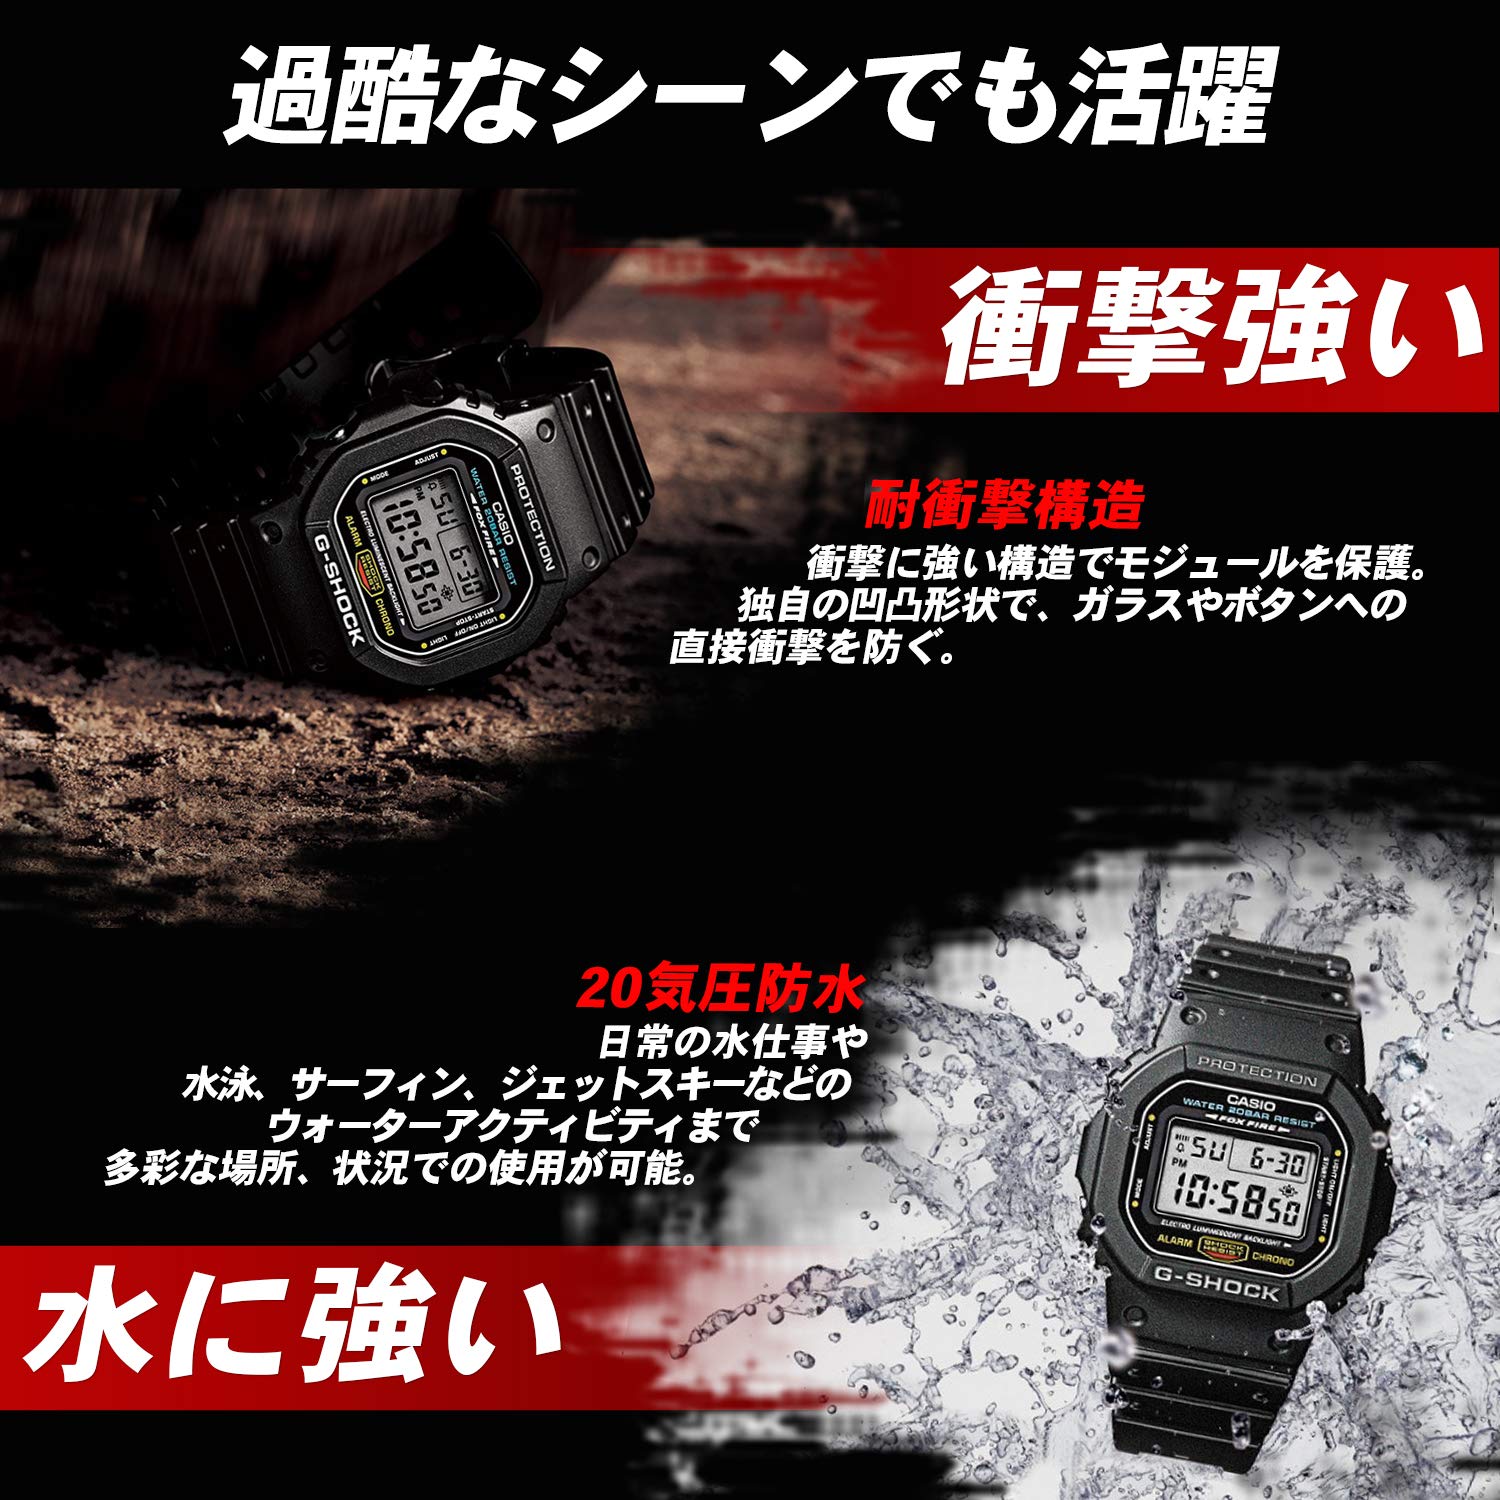 Casio Men's GW-M5610-1BJF G-Shock Solar Digital Multi Band 6 Black Watch